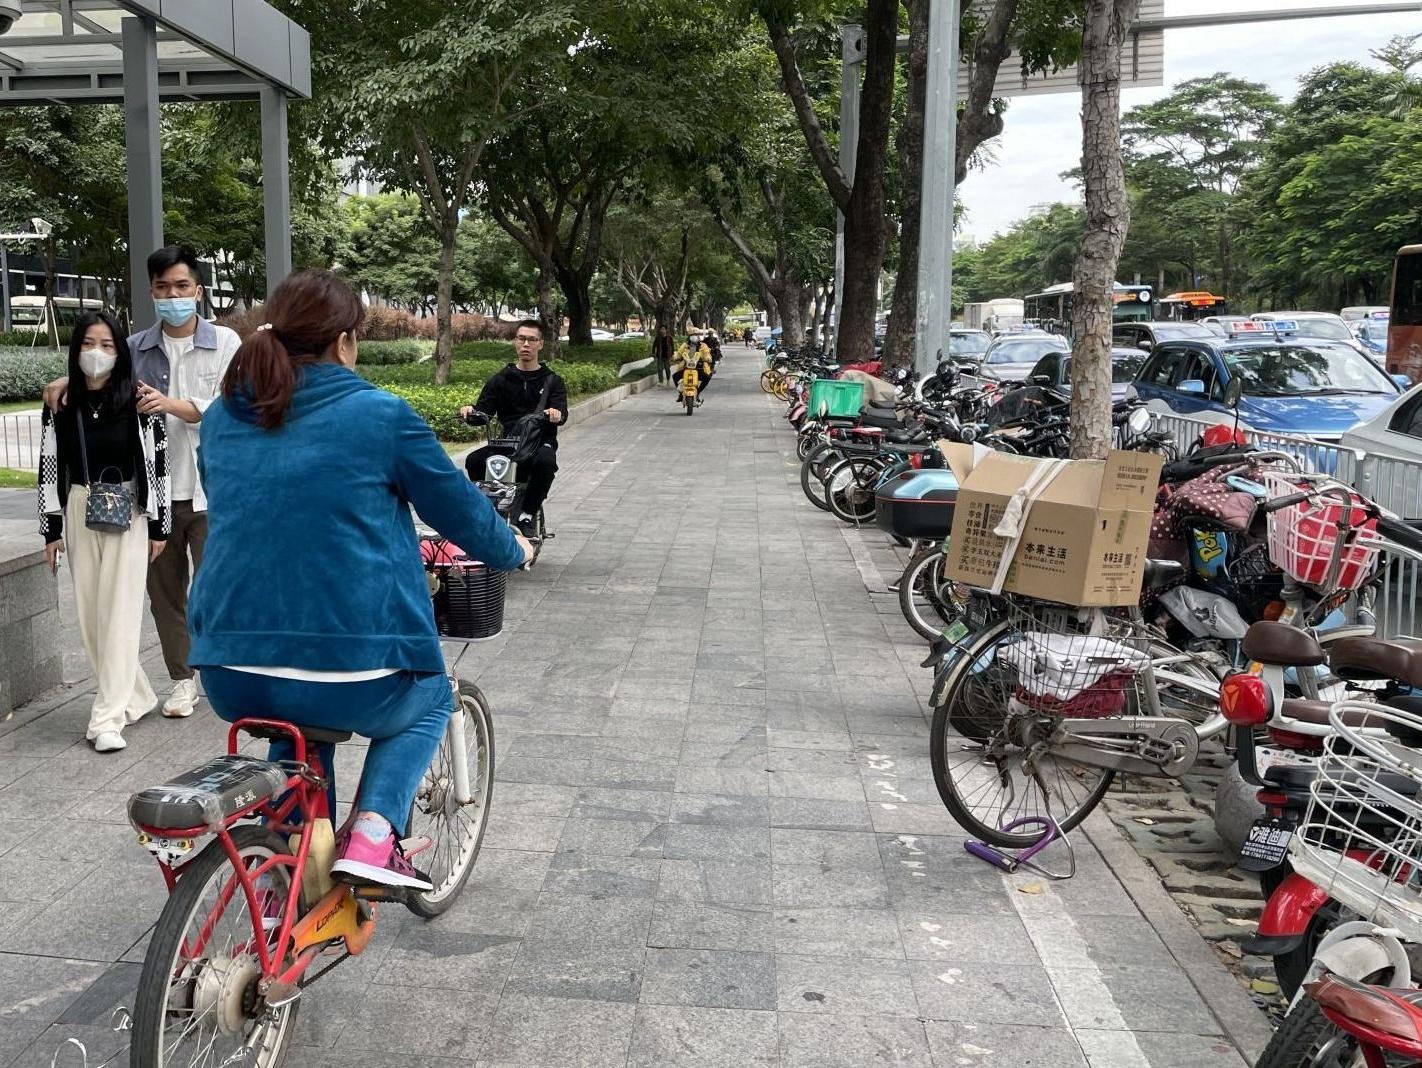 电动自行车与行人抢道困扰市民  广东拟规定“电动车不得在人行道上行驶”